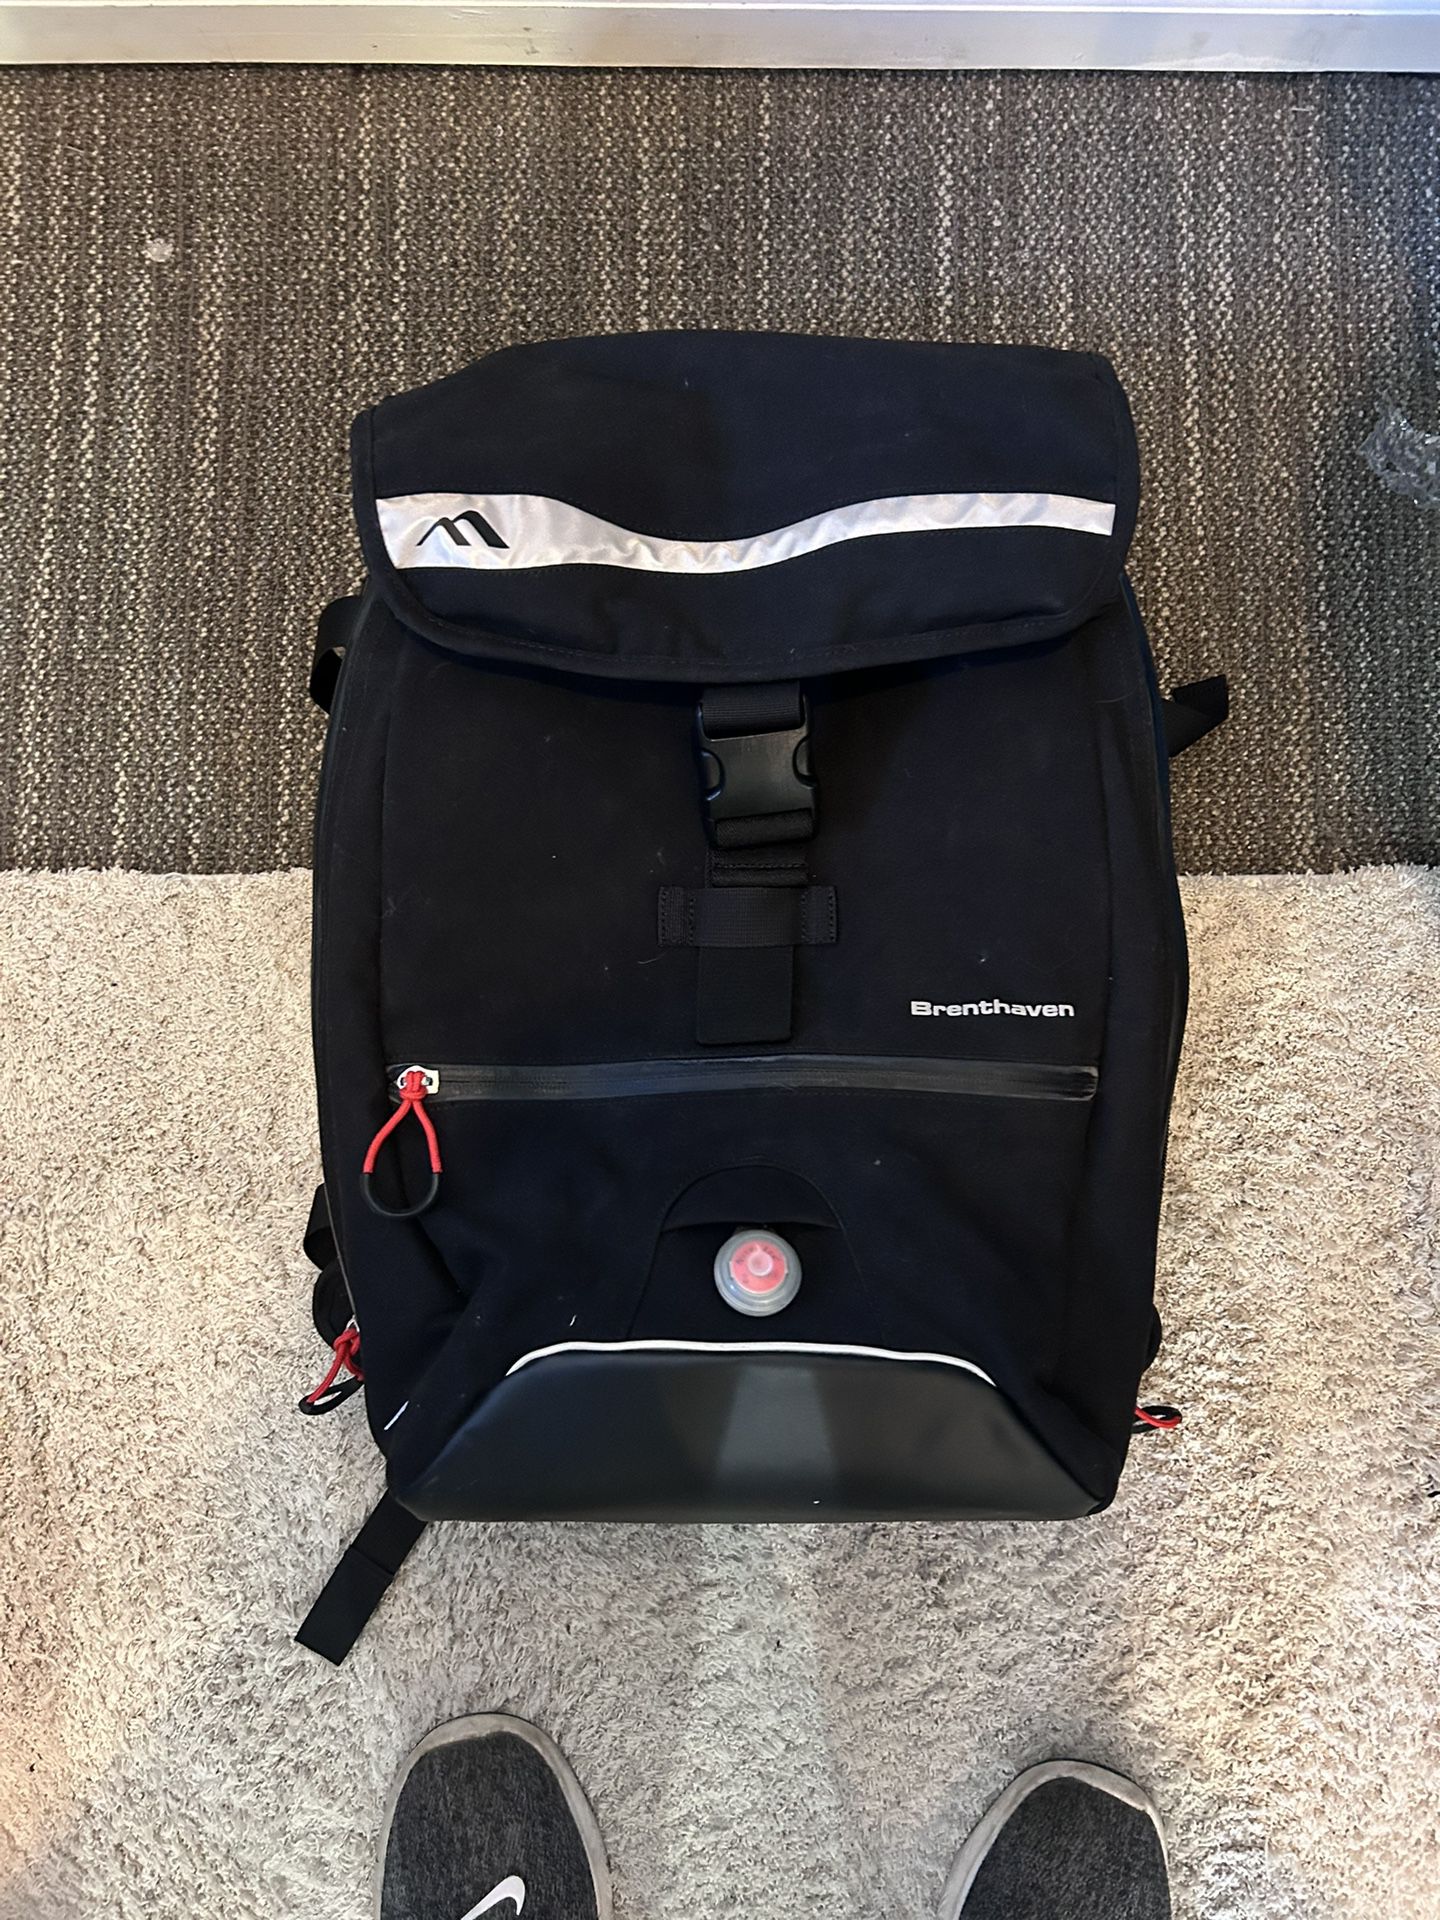 brenthaven laptop bag backpack 17inch